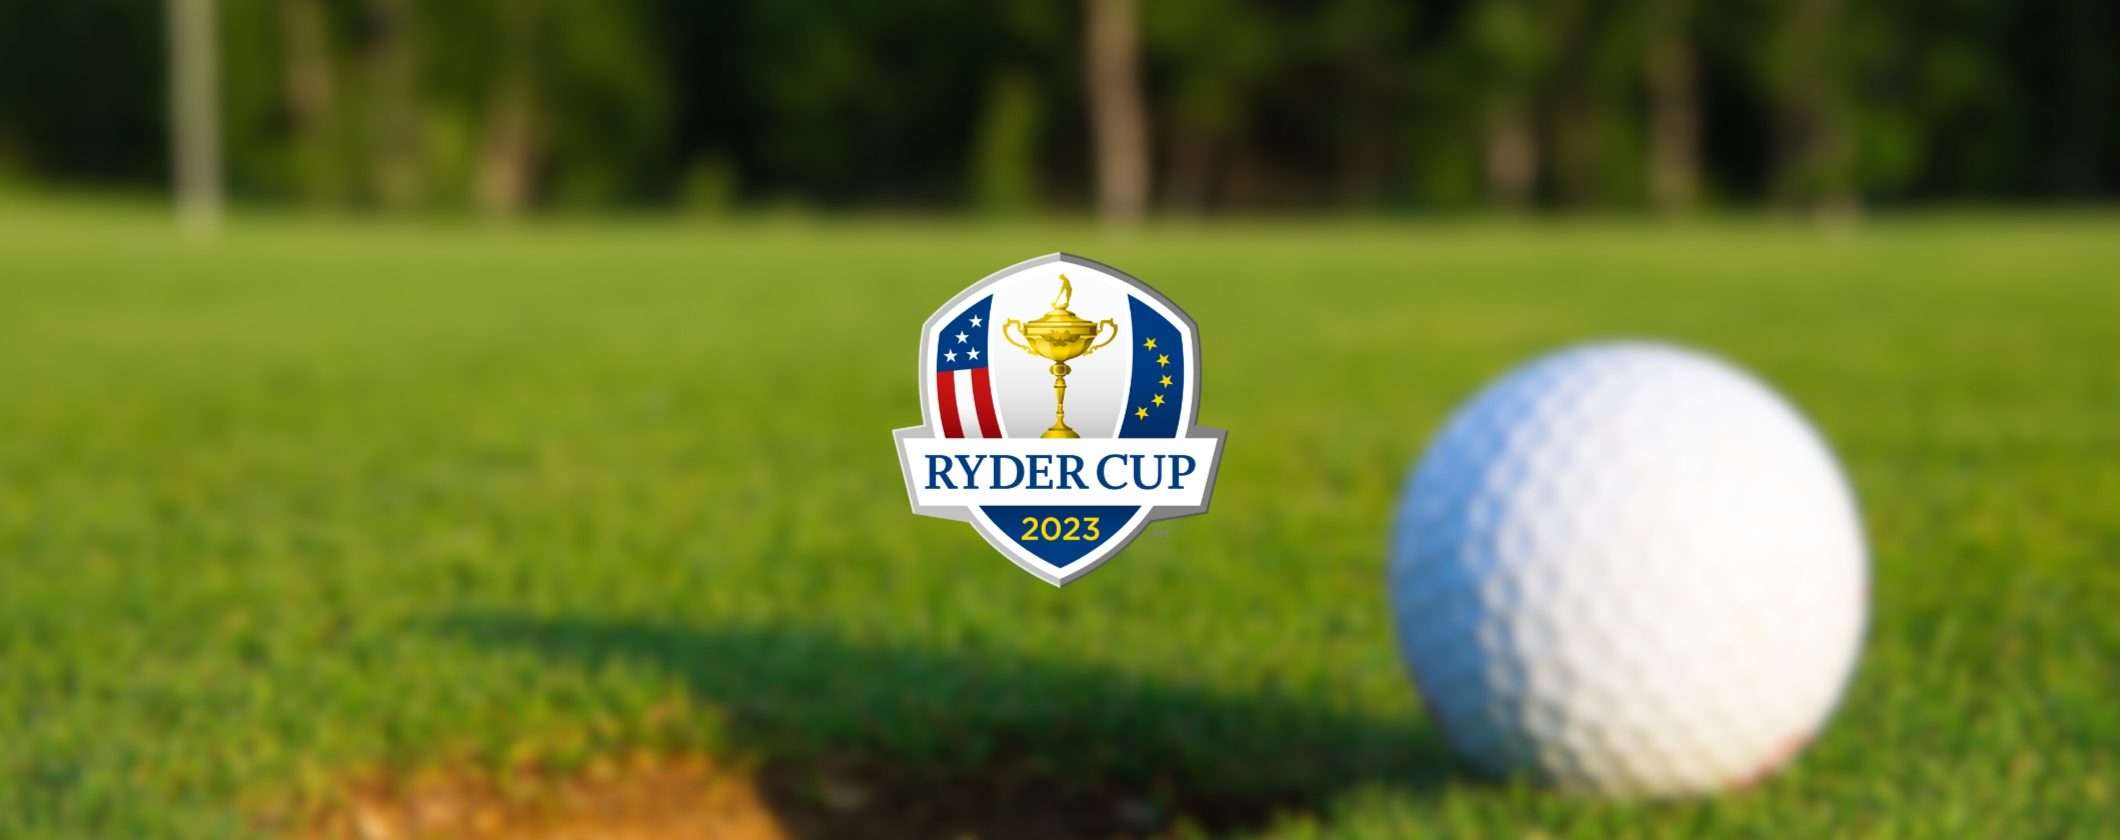 Come vedere la Golf Ryder Cup live streaming dall'estero